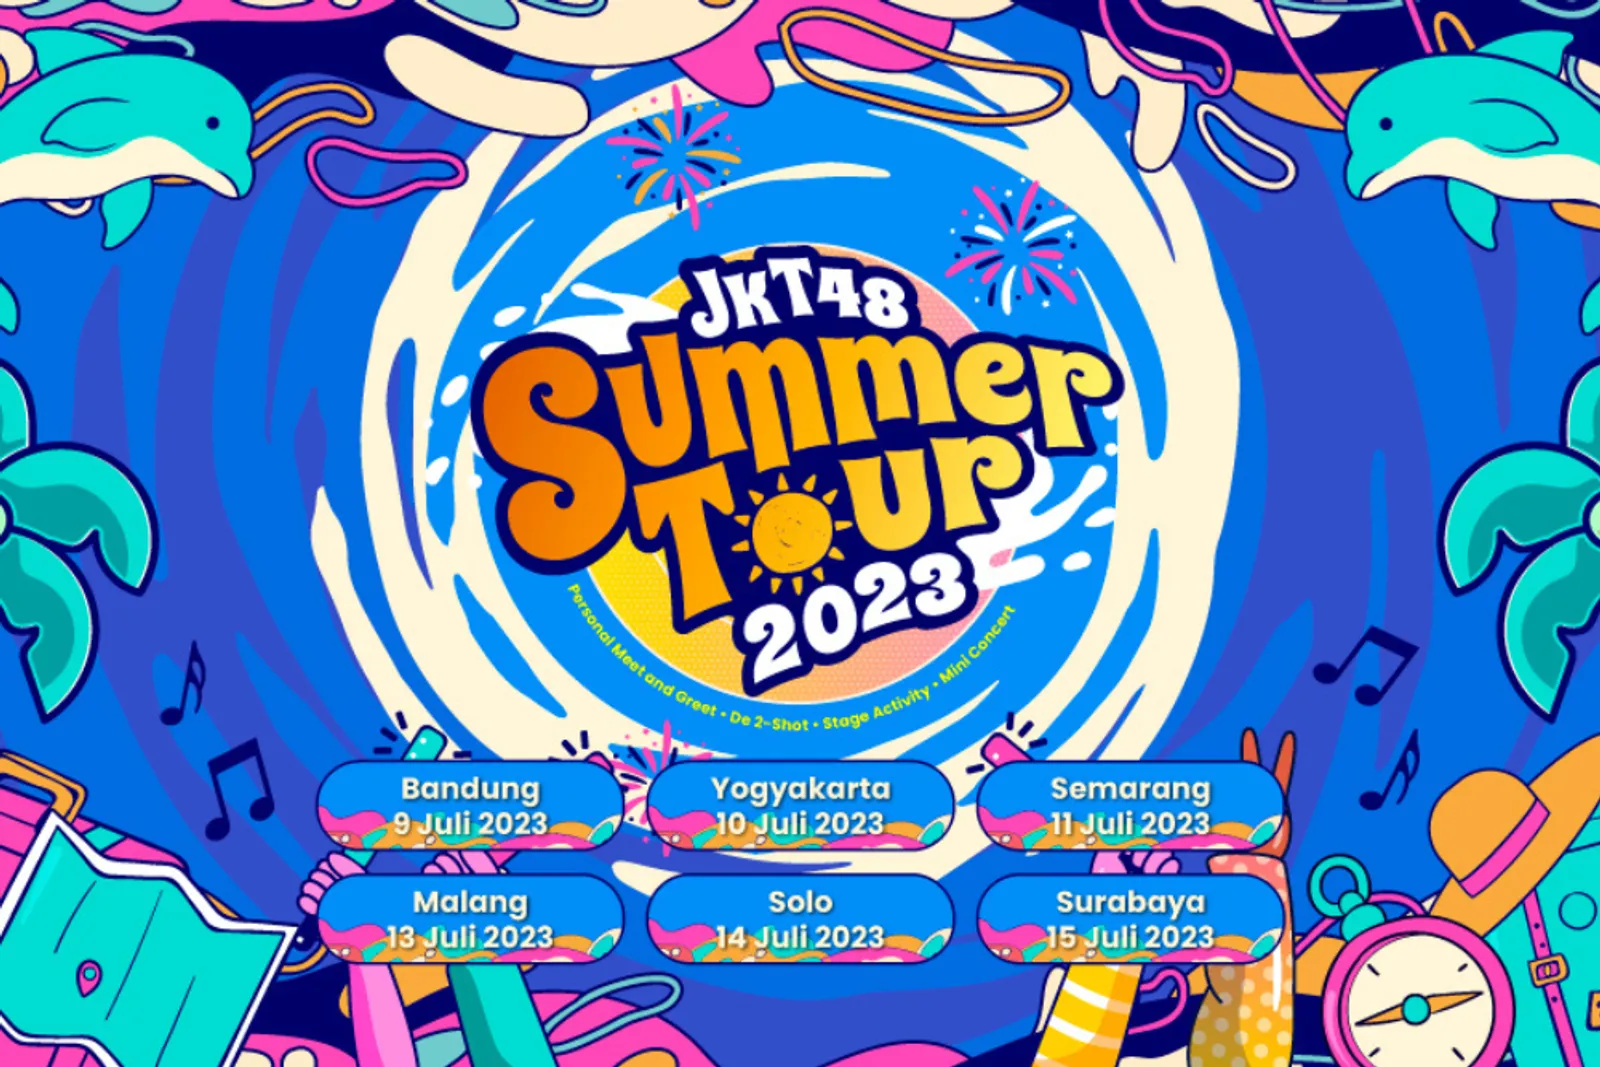 JKT48 Summer Tour 2023 Siap Digelar! Ini Jadwal & Kota yang Disambangi